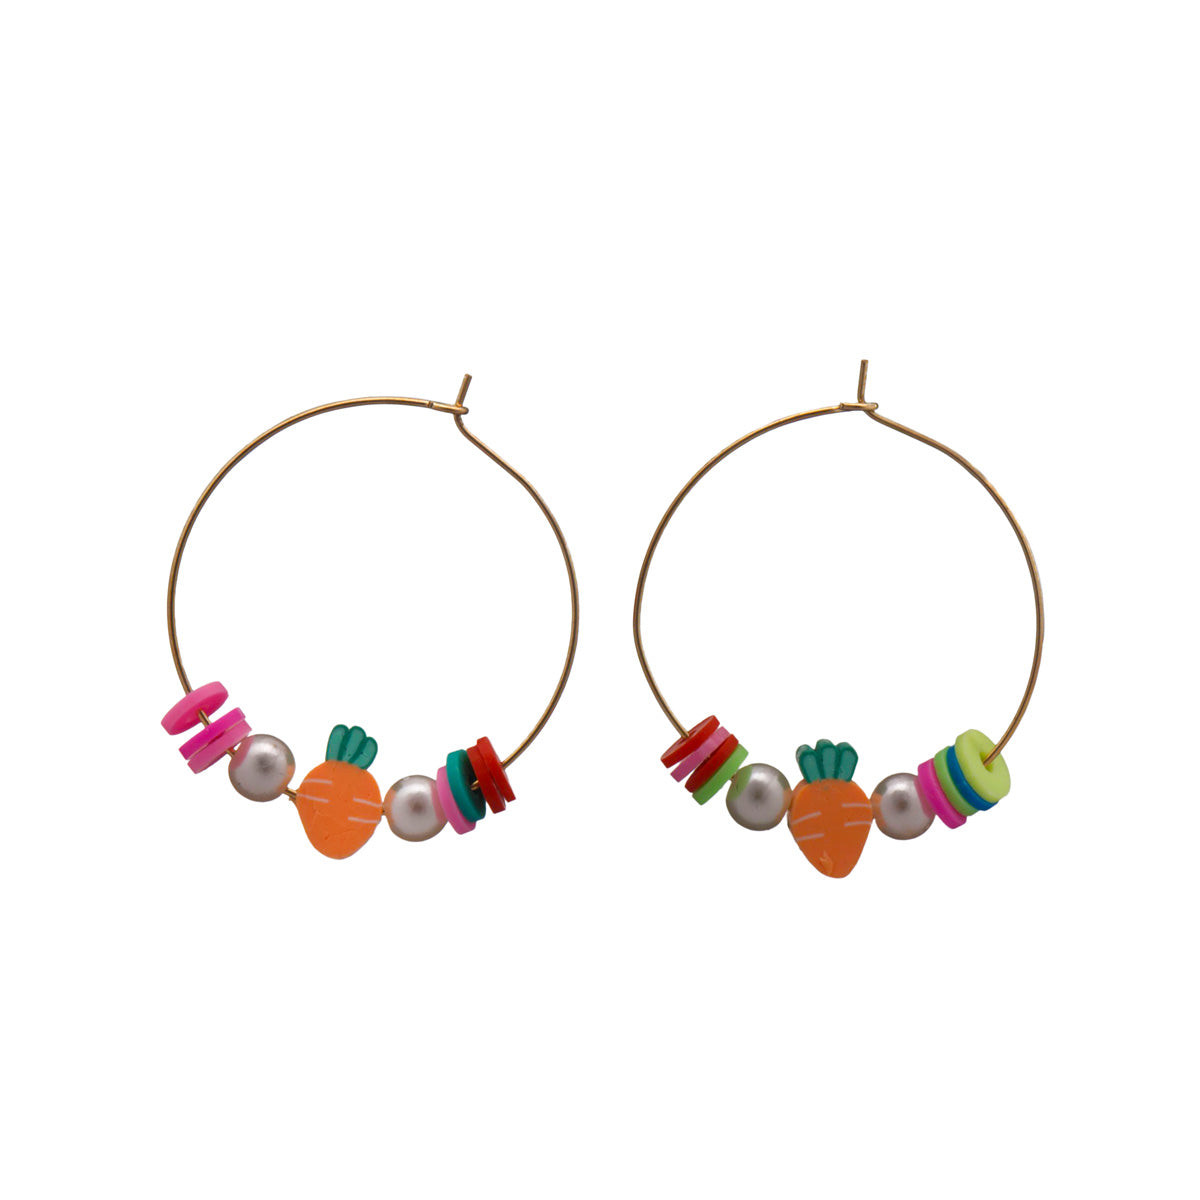 Carrot ring earrings